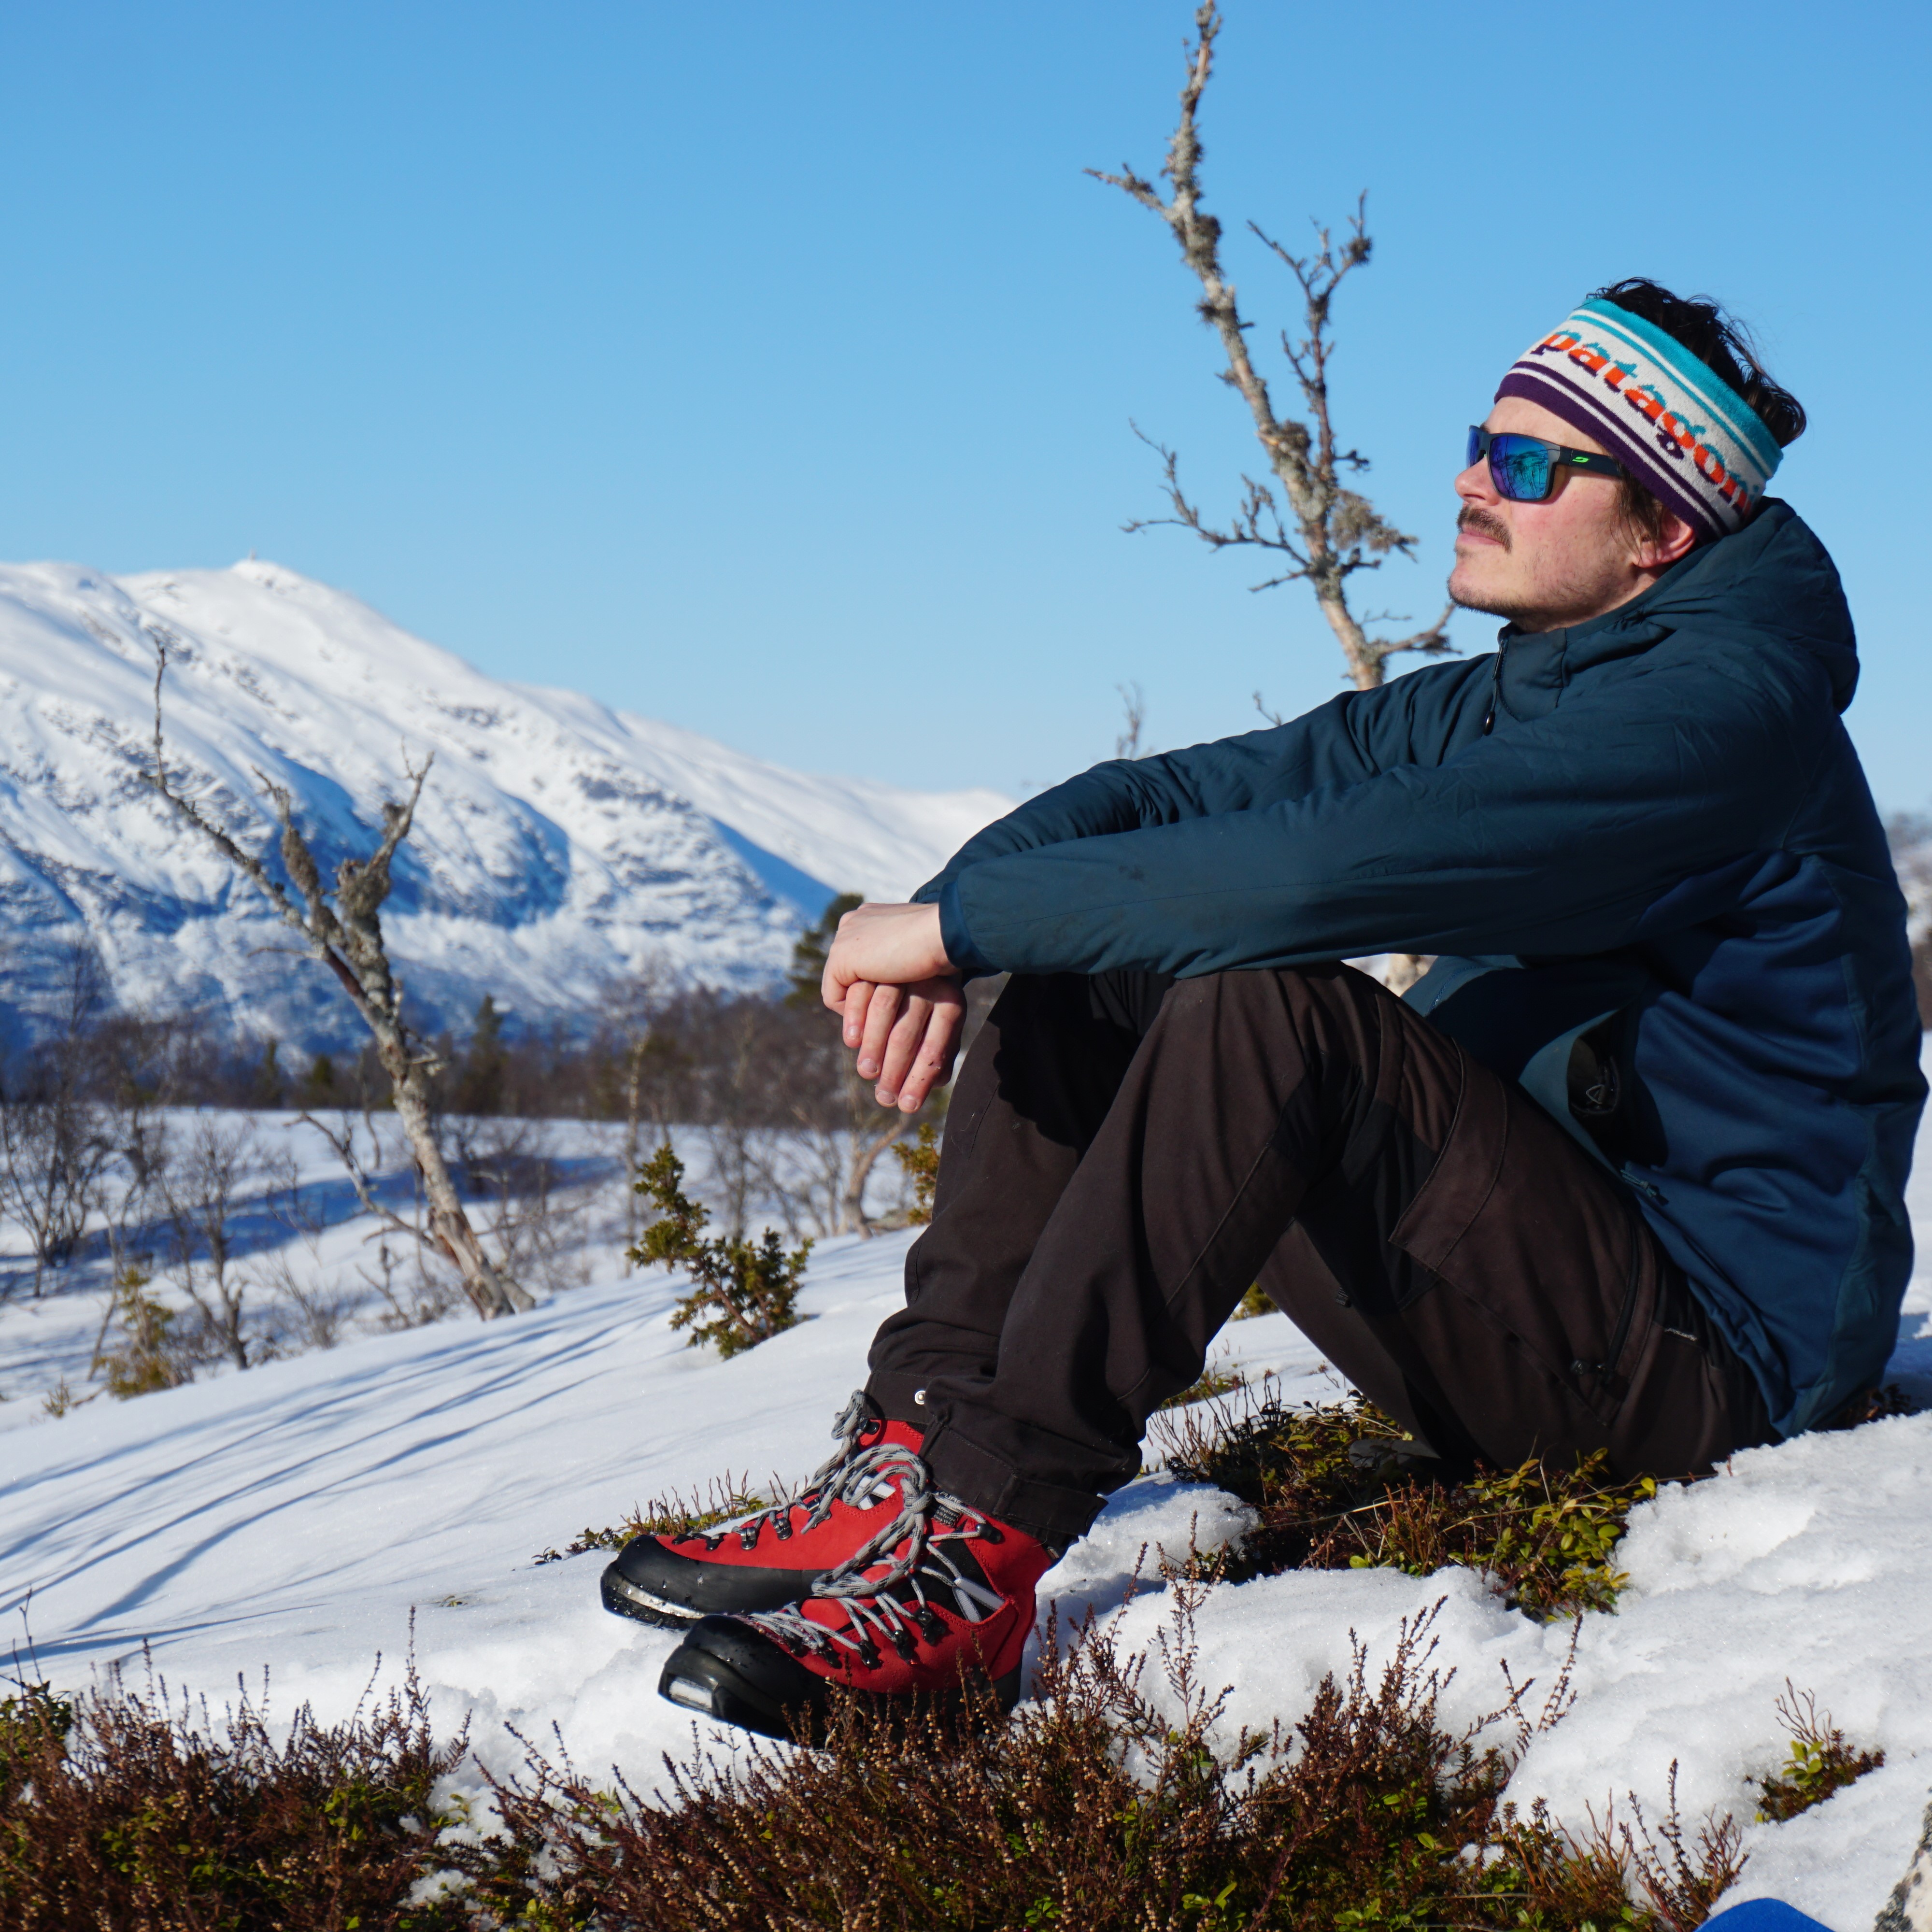 mann tar en pause i skituren, i solen på fjellet